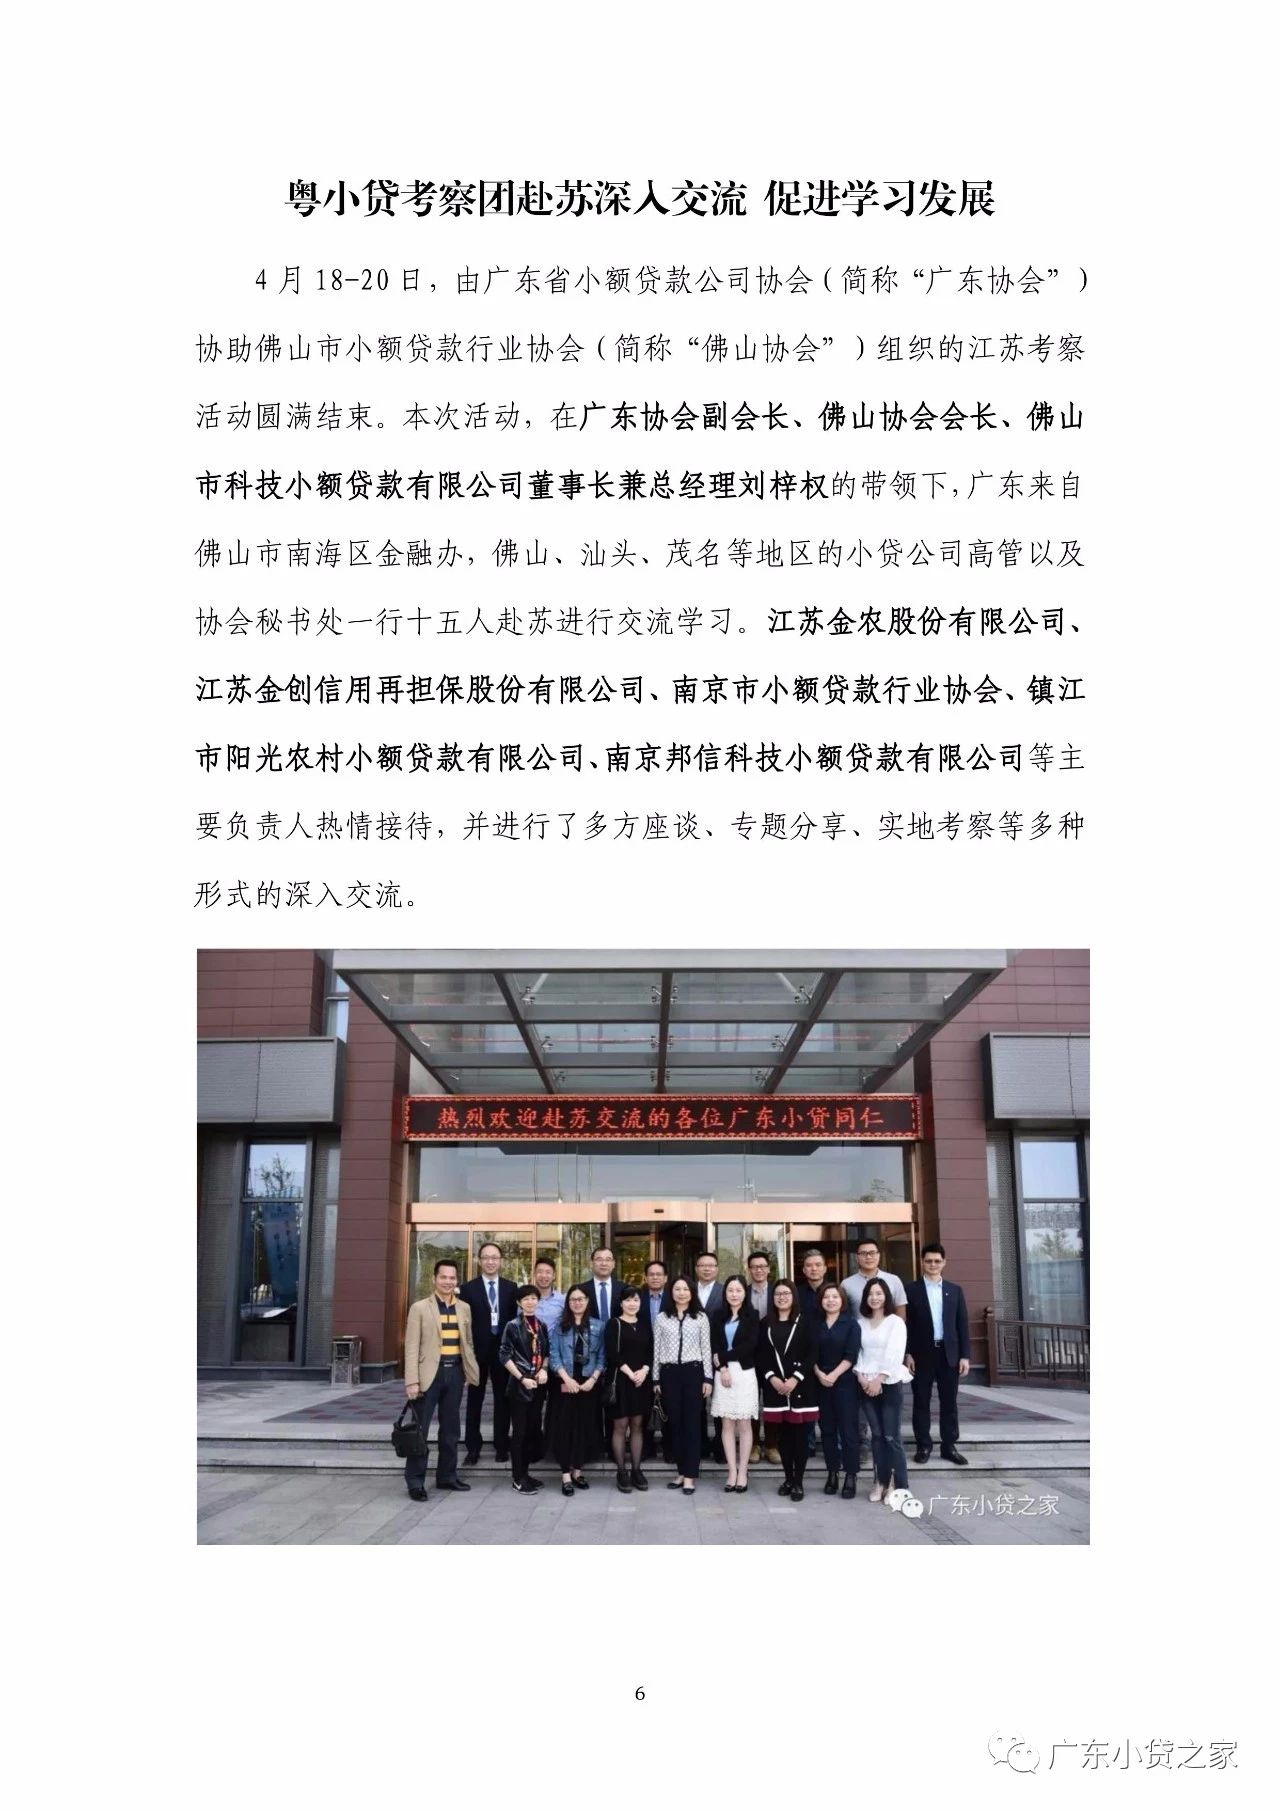 【工作简报】广东省小额贷款公司协会4月份工作简报